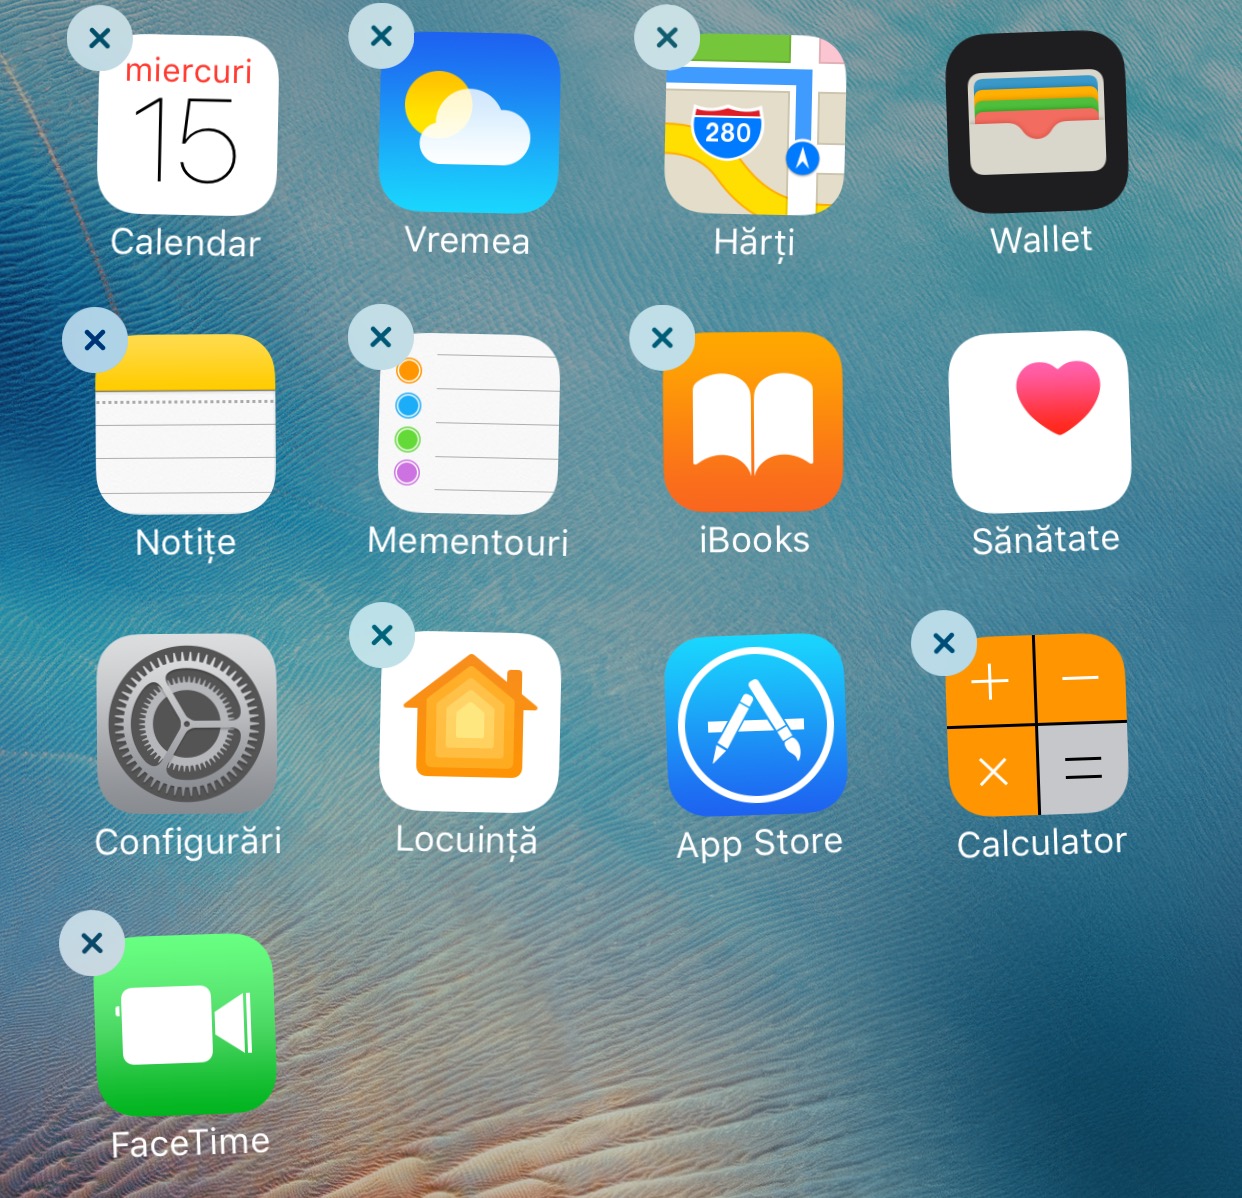 minciuna stergere aplicatii iOS 10